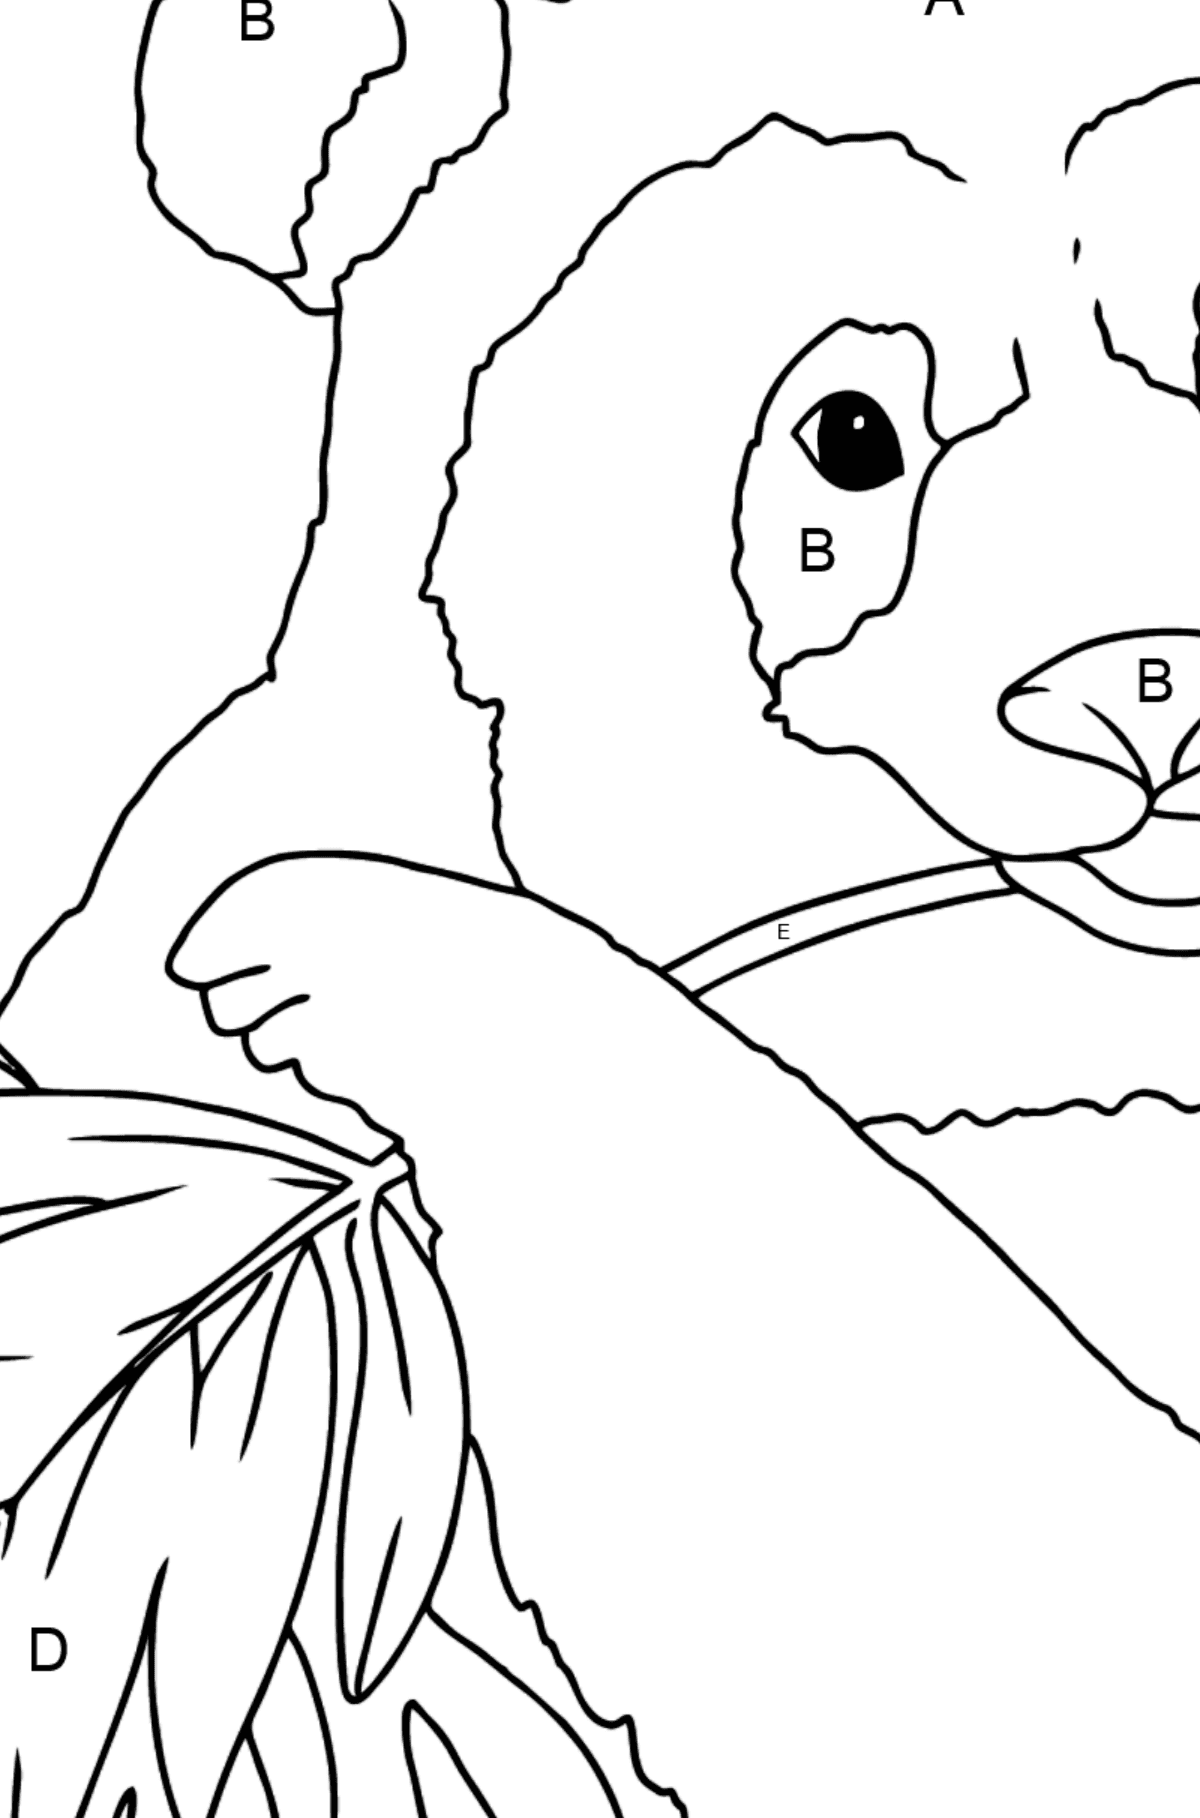 Coloriage - Un panda qui mange des feuilles - Coloriage par Lettres pour les Enfants